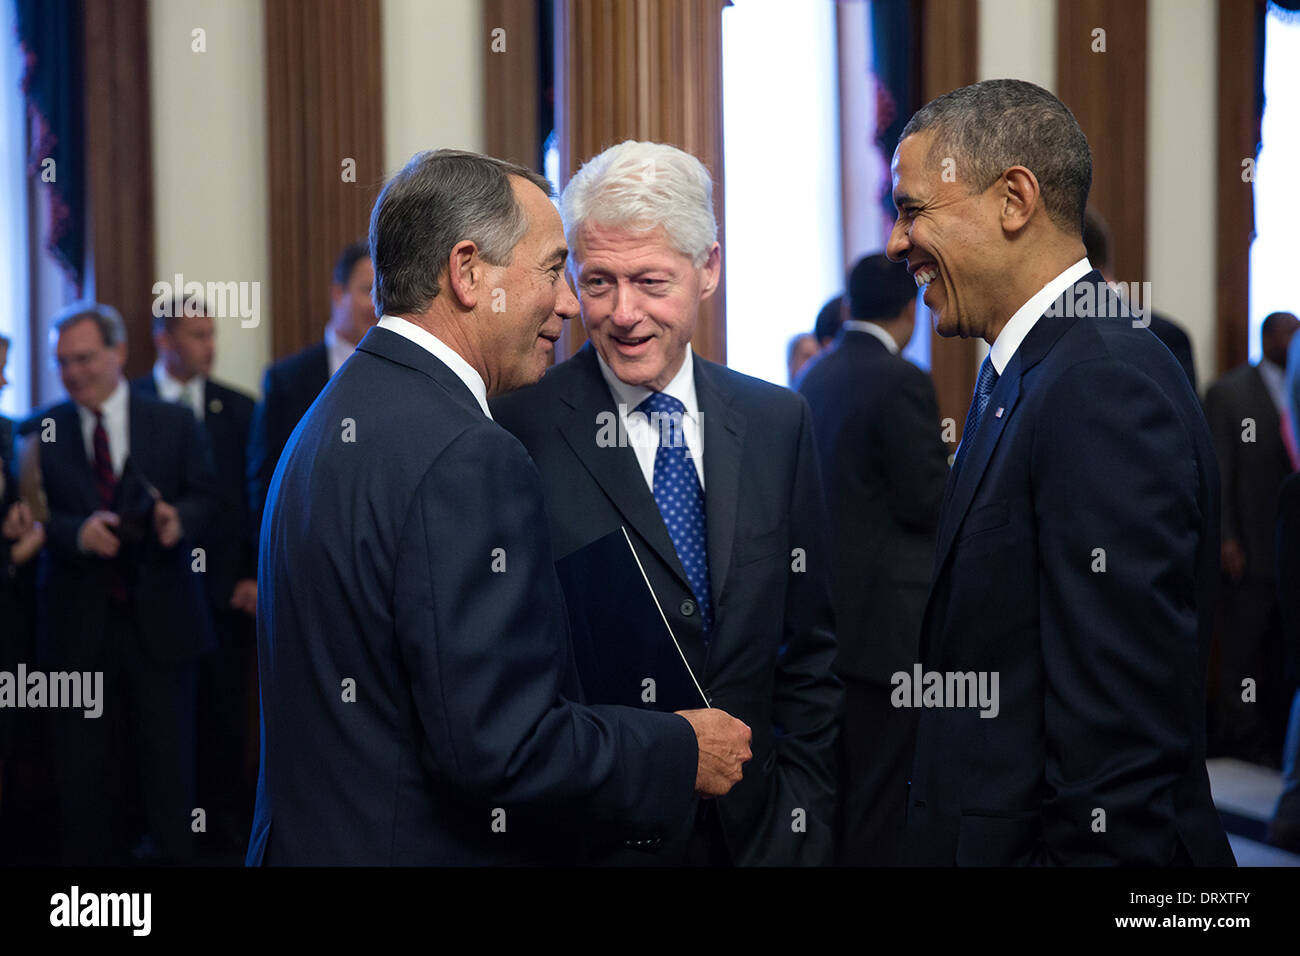 US-Präsident Barack Obama und ehemaligen Präsidenten Bill Clinton mit House Speaker John Boehner vor einer Trauerfeier für ehemalige Haus Sprecher Tom Foley im US Capitol 29. Oktober 2013 in Washington, DC zu sprechen. Stockfoto